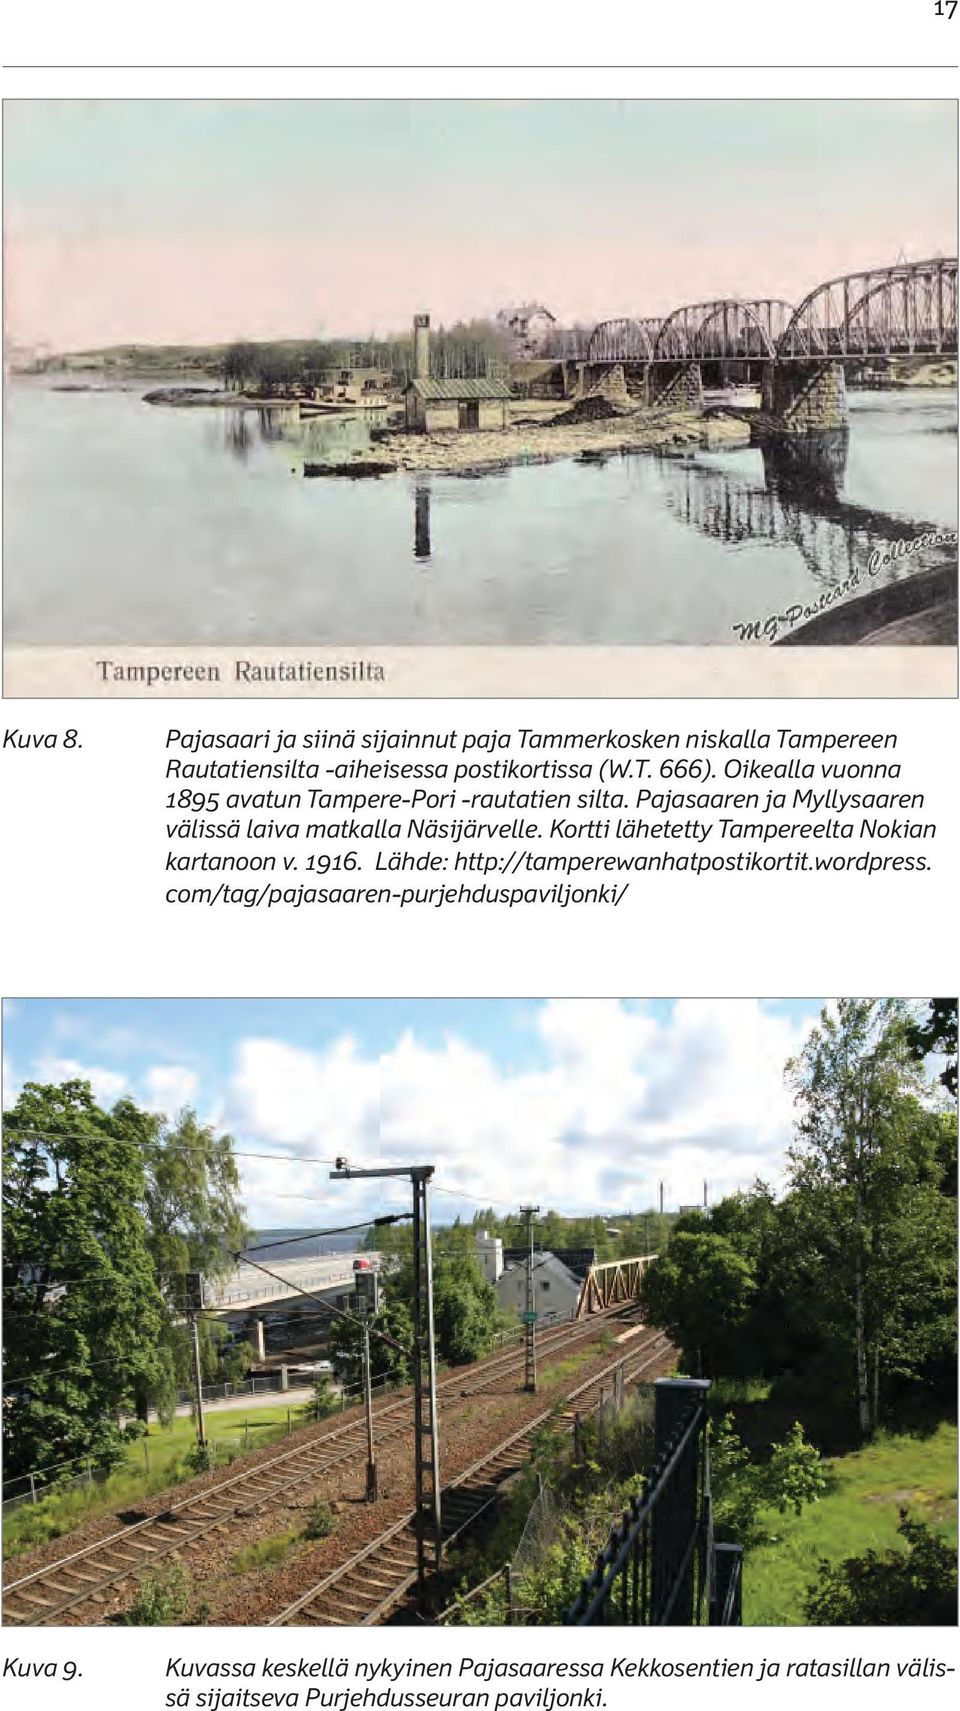 Kortti lähetetty Tampereelta Nokian kartanoon v. 1916. Lähde: http://tamperewanhatpostikortit.wordpress.